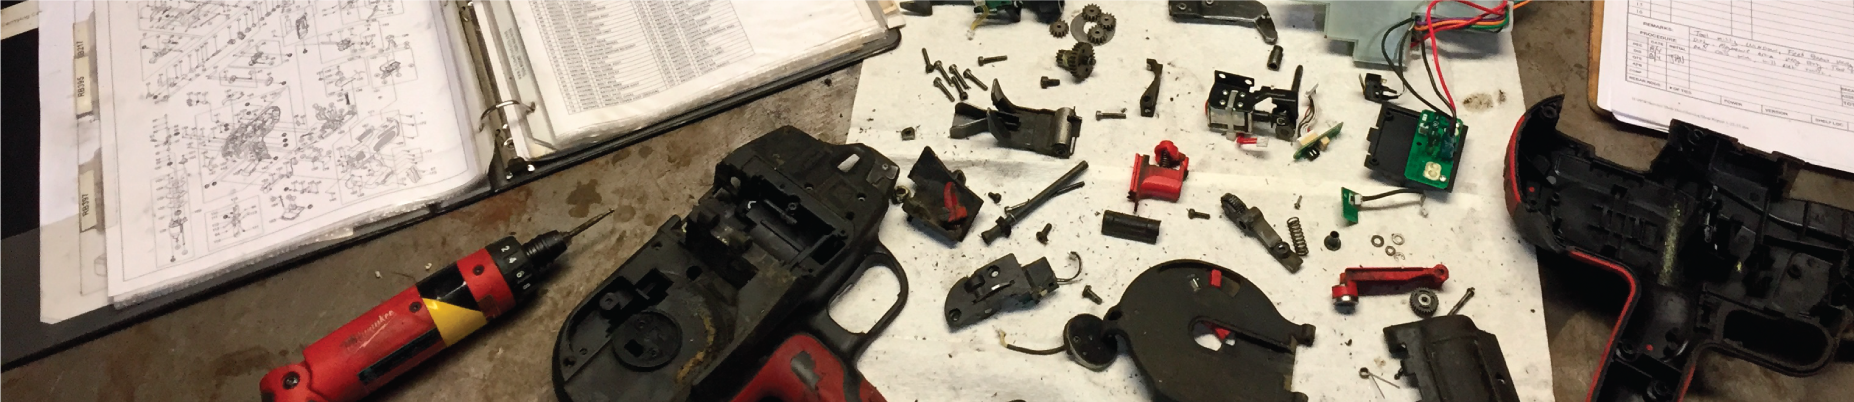 tool-repair-header-image.png